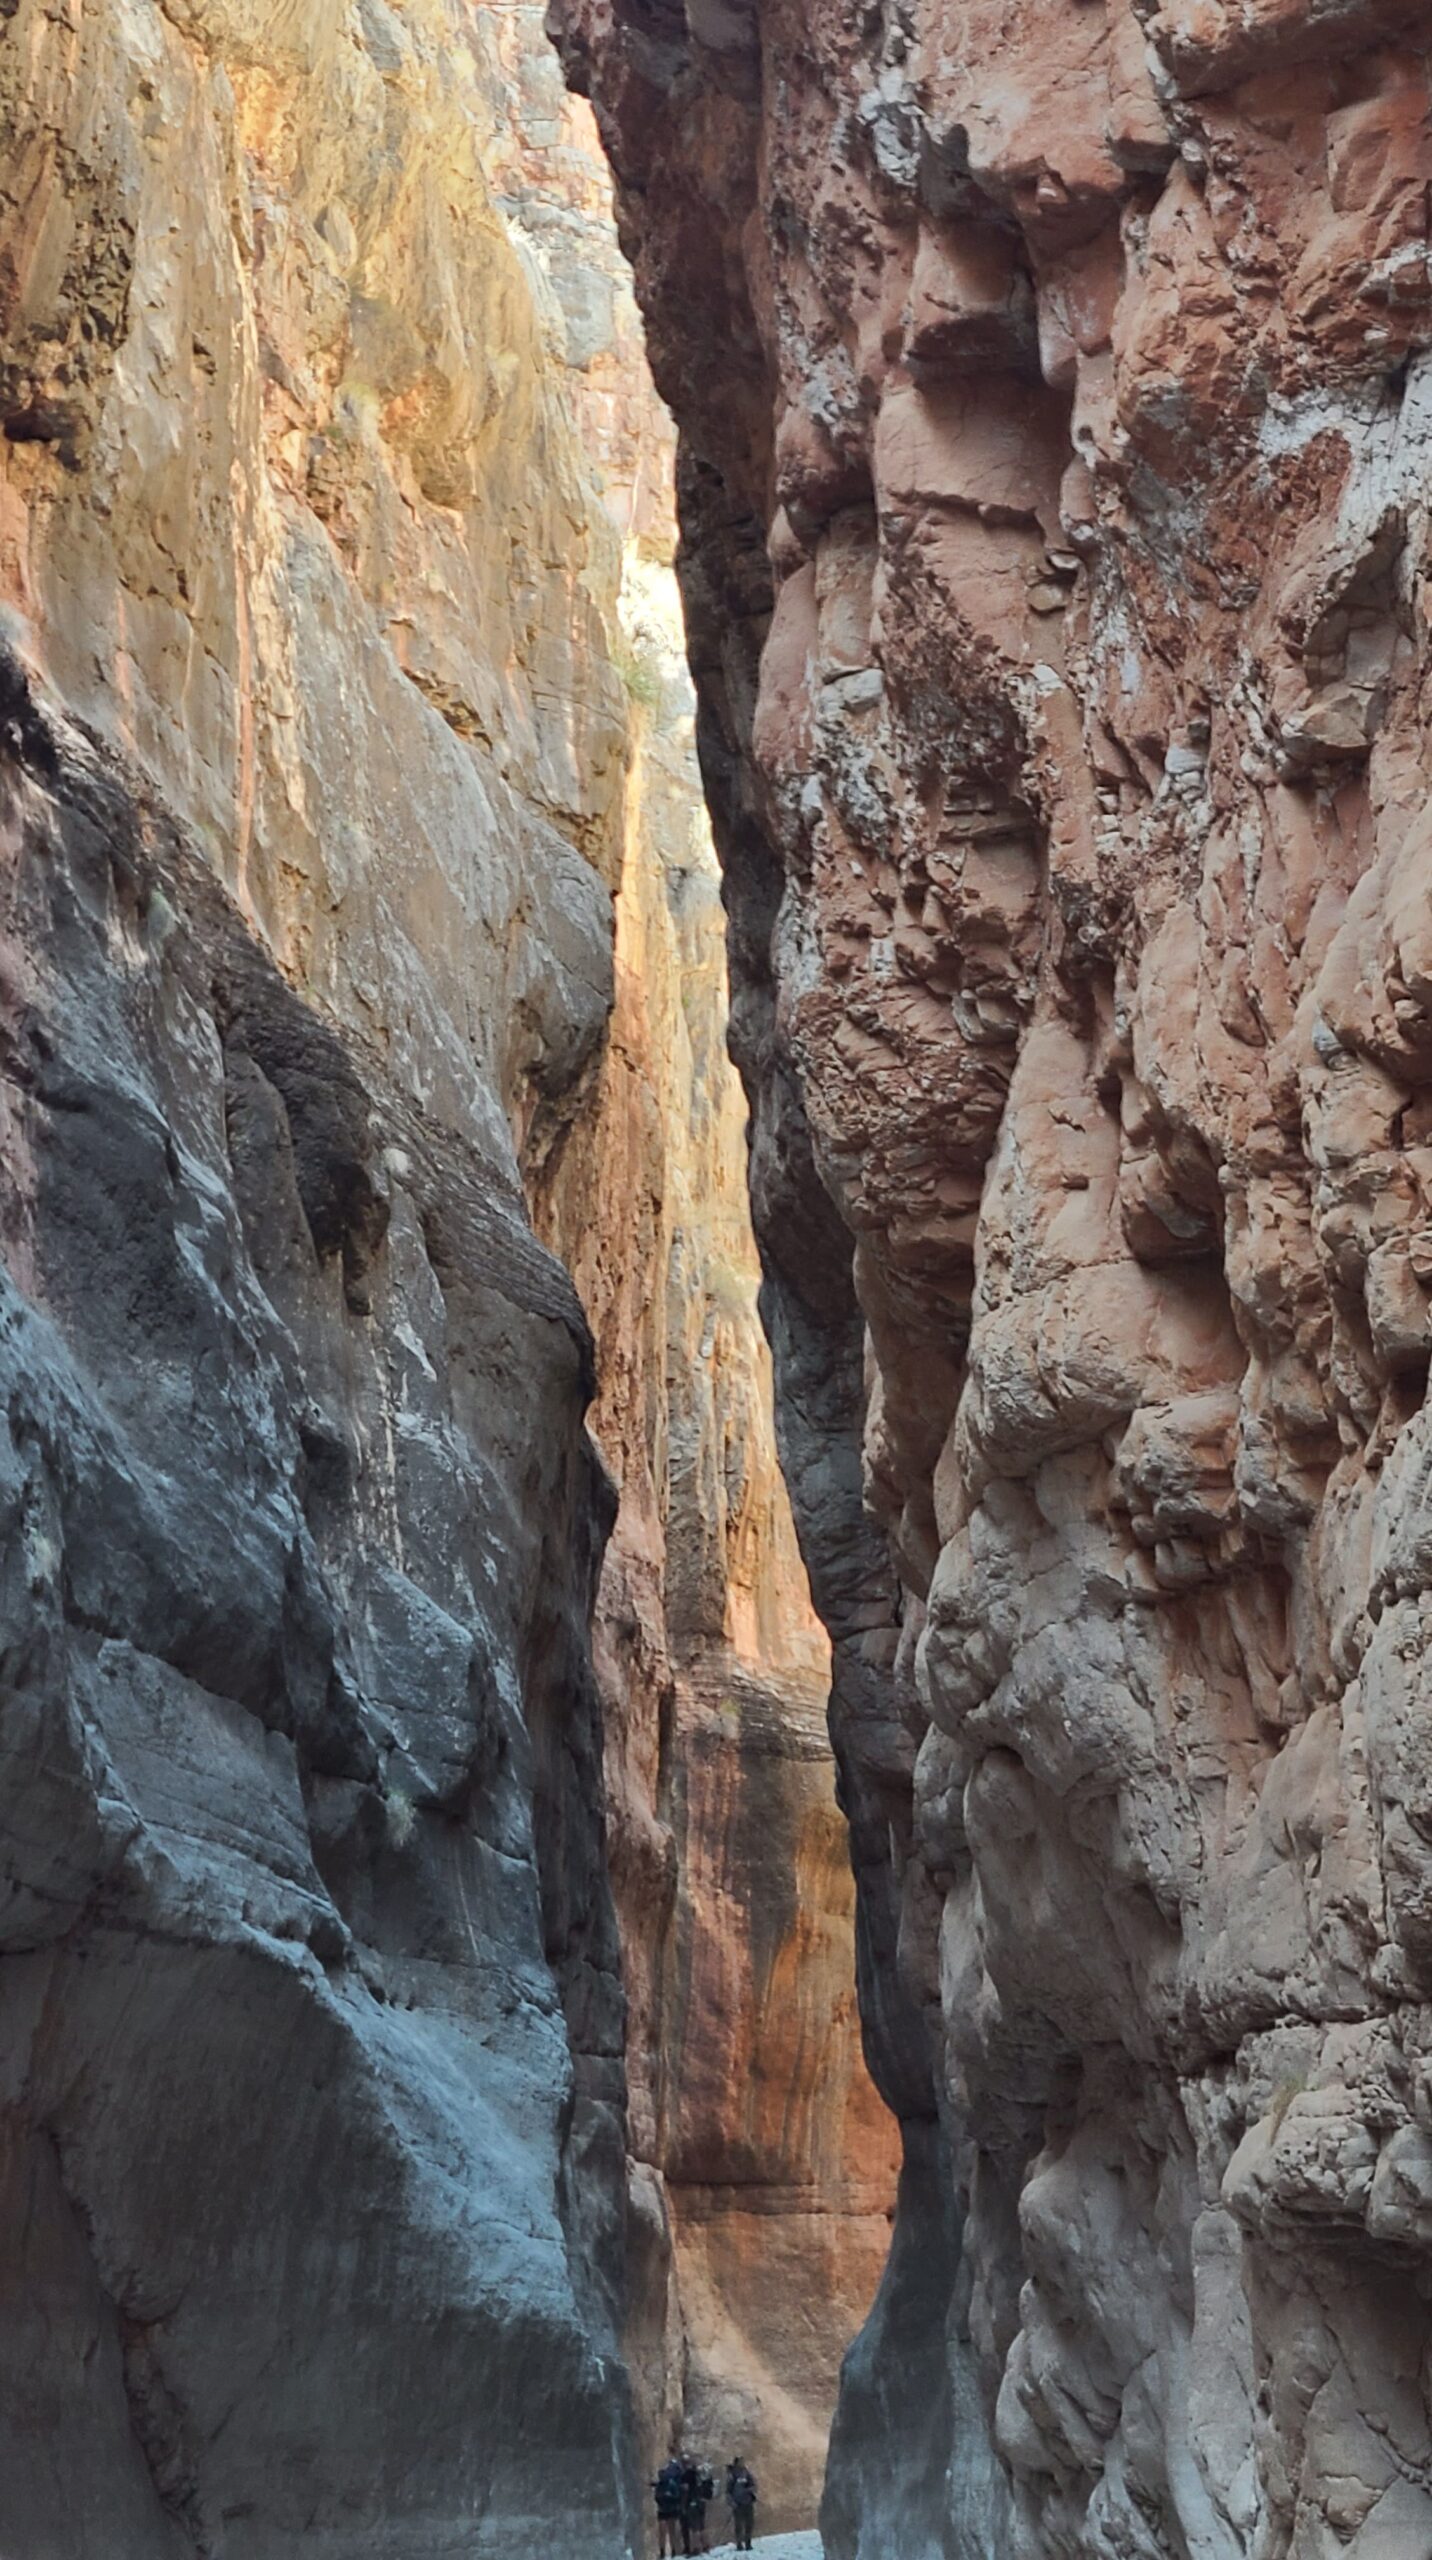 Jumpup Canyon Narrows